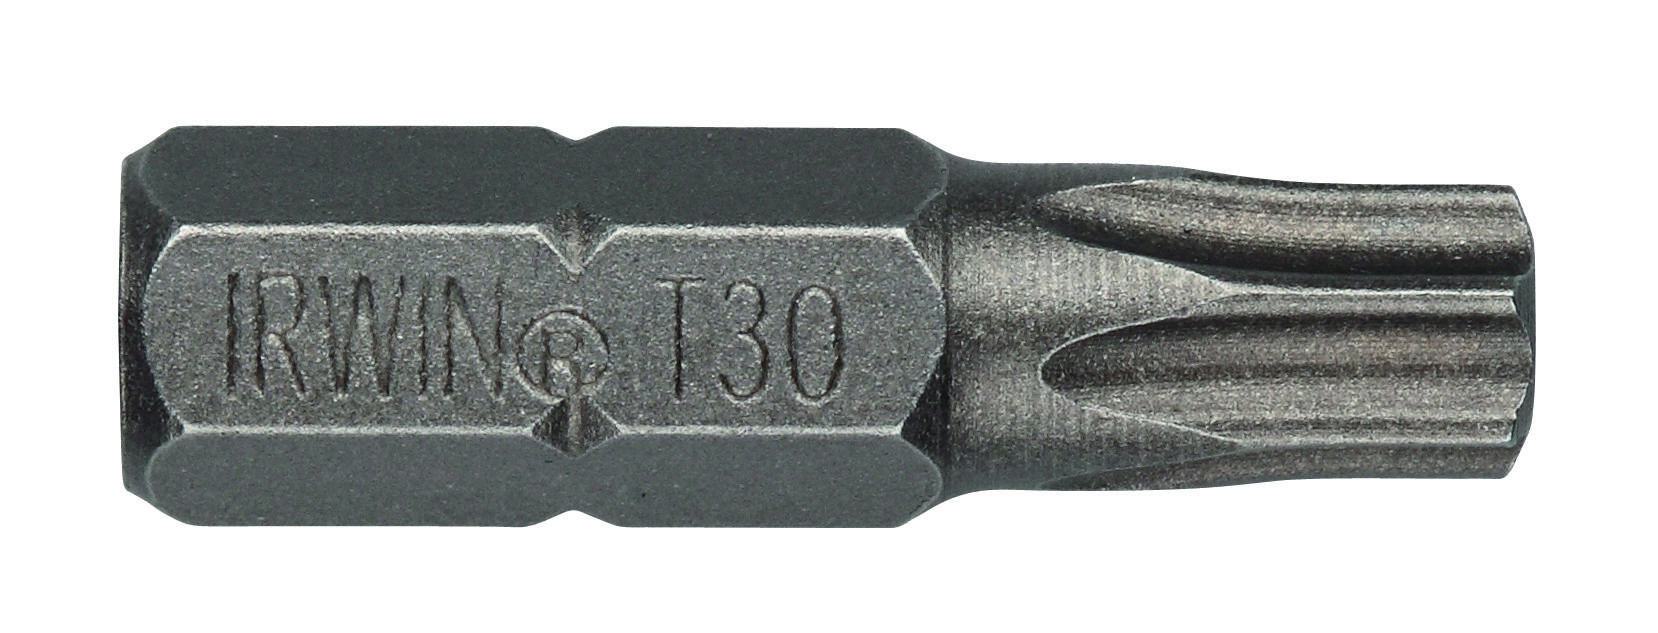 bit nástavec TORX 15  25mm (10ks)  IRWIN 0.09 Kg MAXMIX Sklad14 671142 10